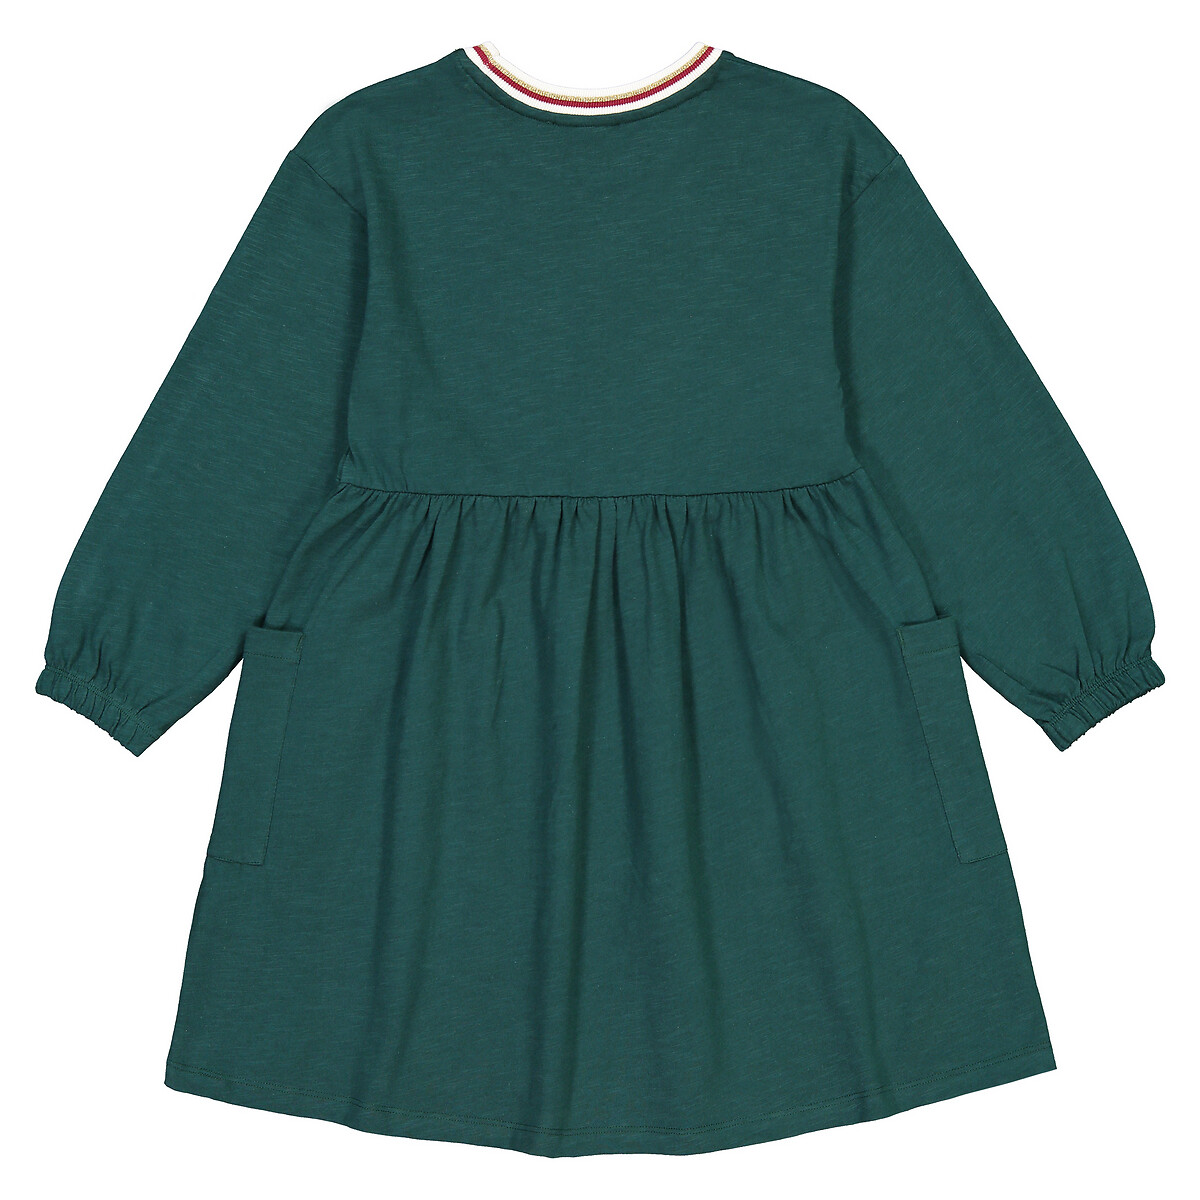 Платье LaRedoute С круглым воротником и длинными рукавами 3-12 лет 4 года - 102 см зеленый, размер 4 года - 102 см - фото 4